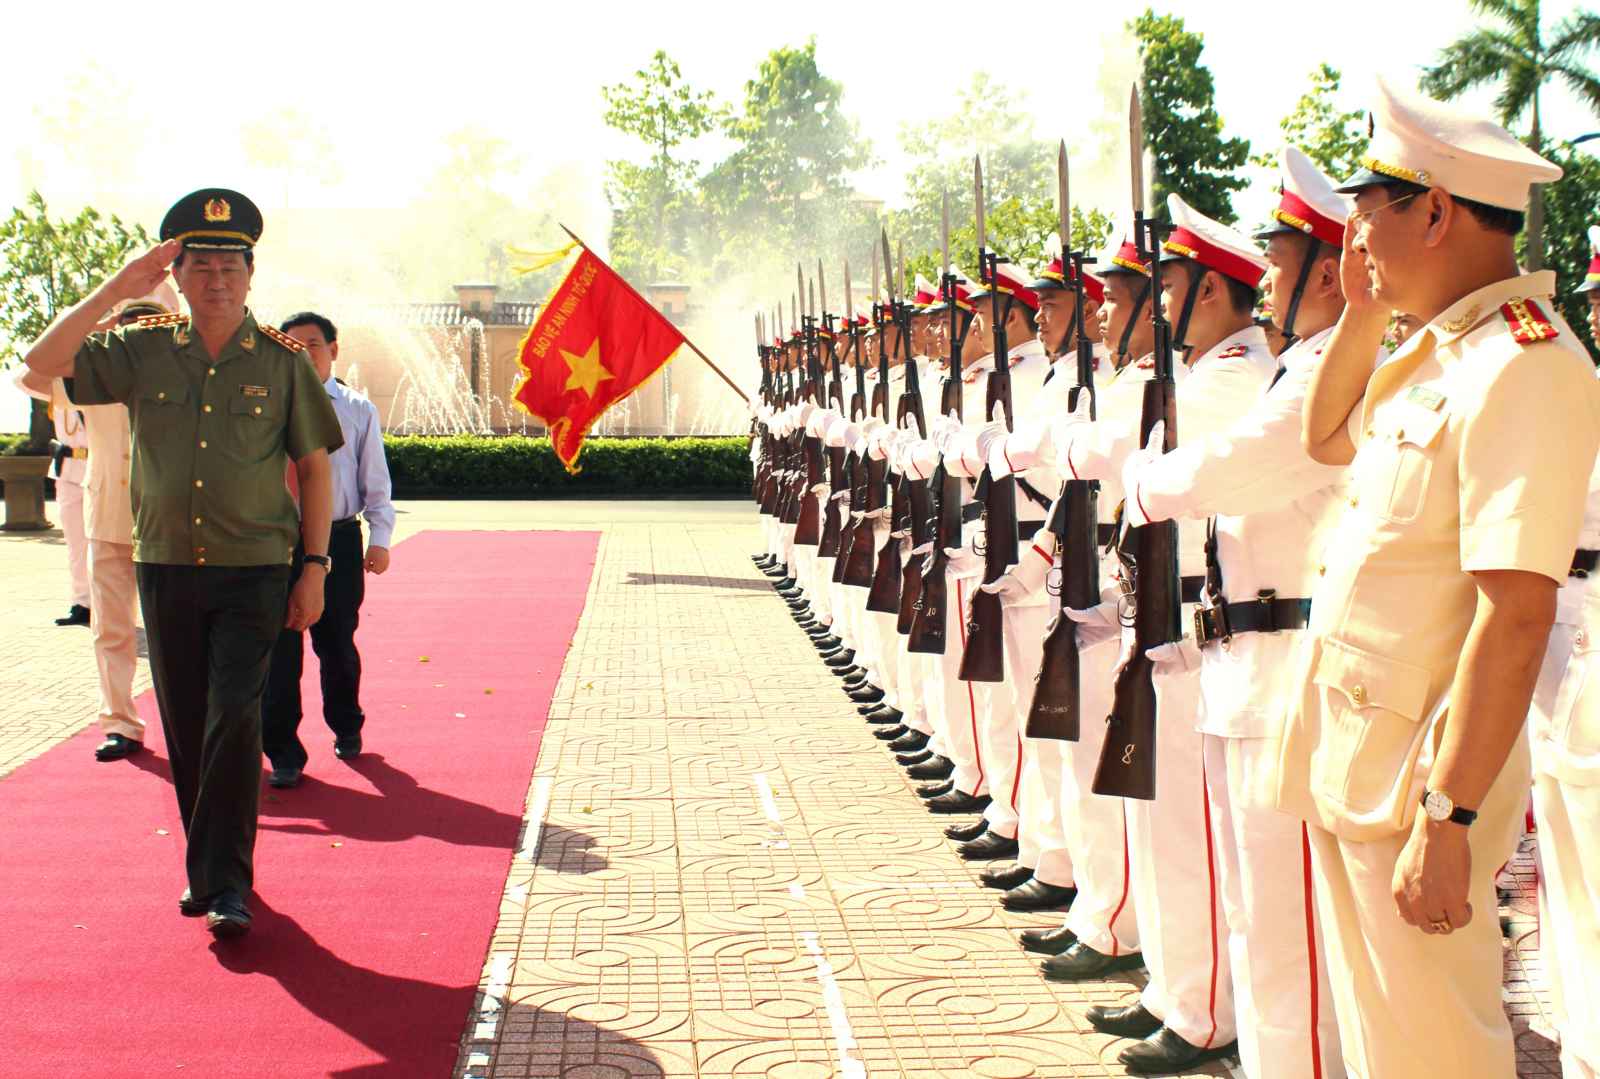 Đồng chí Đại tướng Trần Đại Quang, Ủy viên Bộ Chính trị, Bộ trưởng Bộ Công an duyệt đội danh dự Công an Nghệ An. Ảnh: Hải Việt